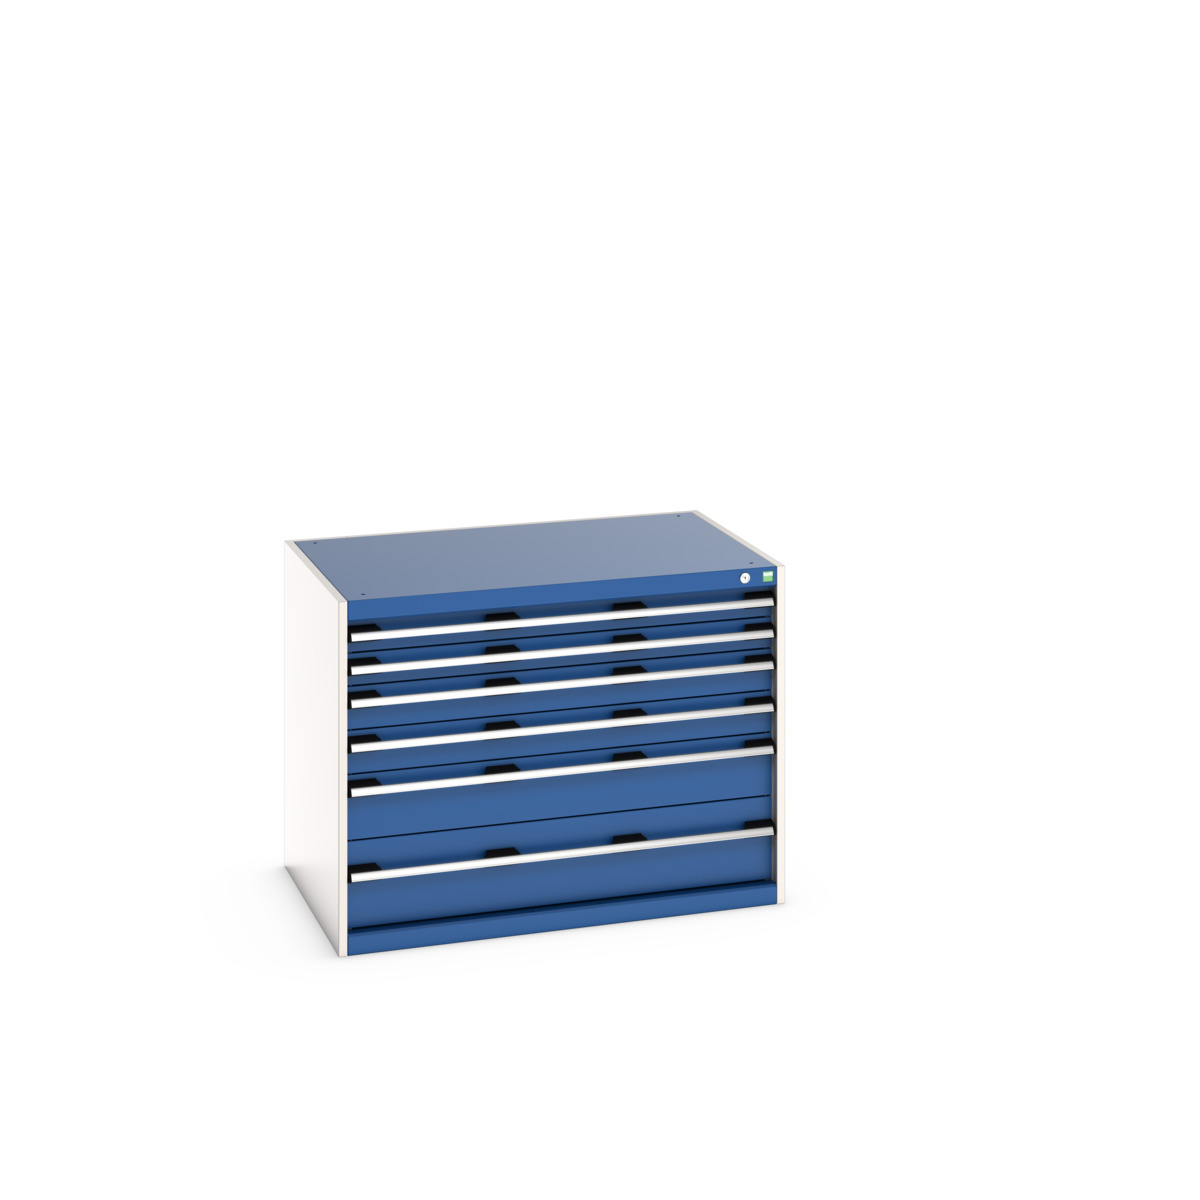 40029085.11V - cubio drawer cabinet